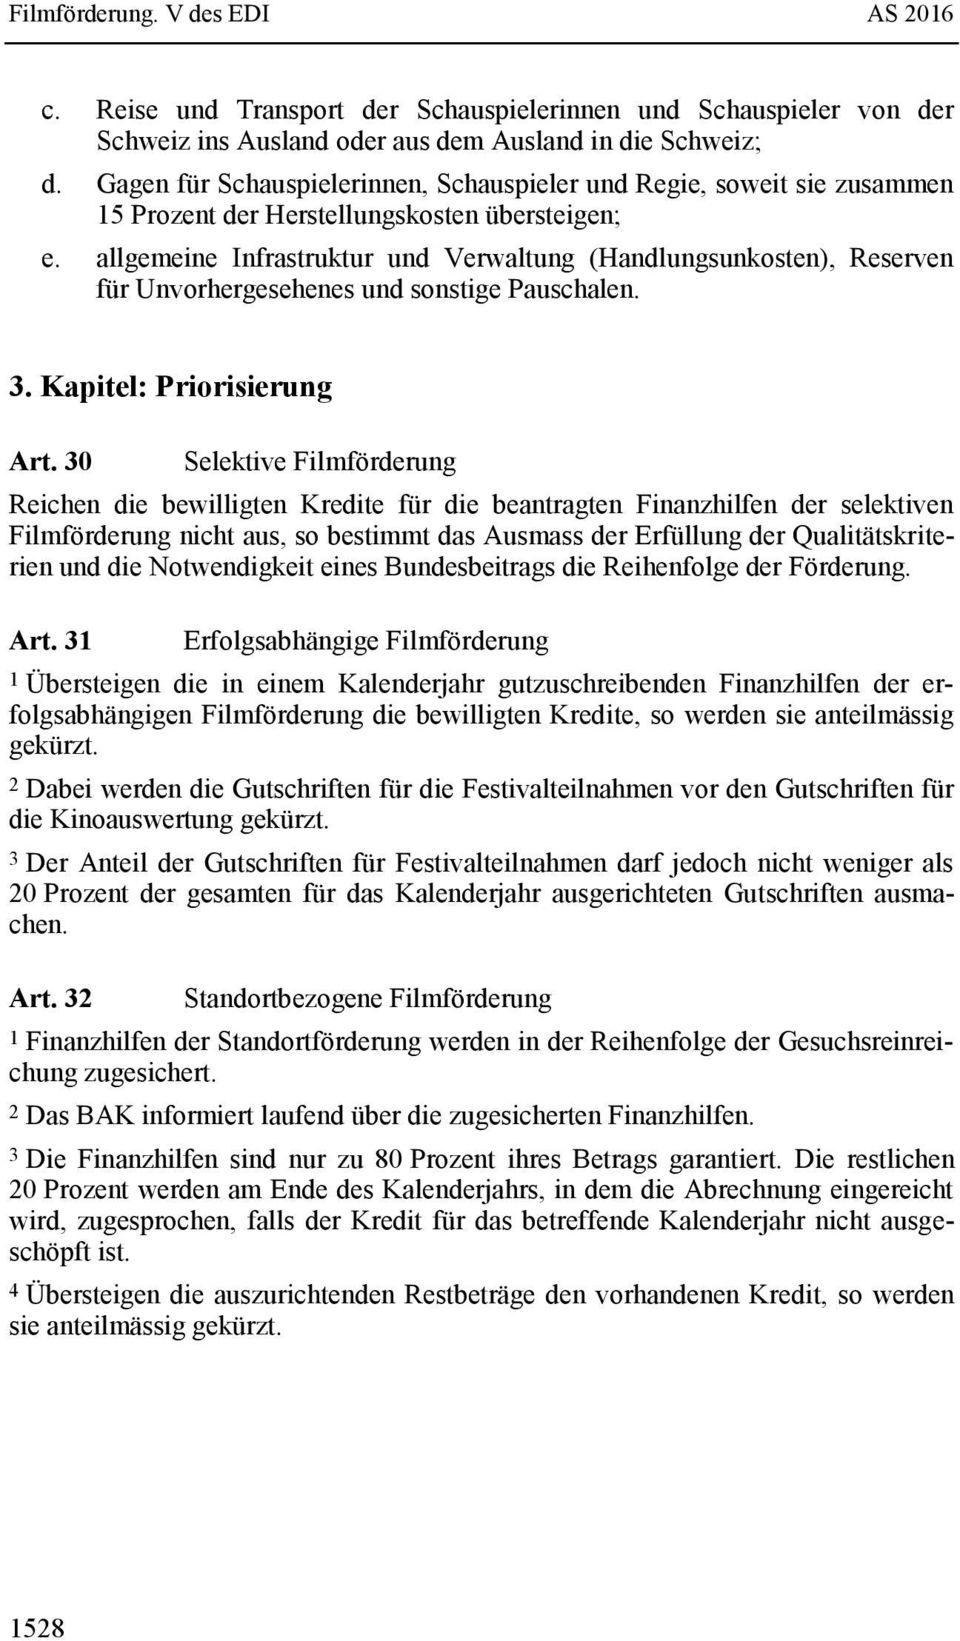 allgemeine Infrastruktur und Verwaltung (Handlungsunkosten), Reserven für Unvorhergesehenes und sonstige Pauschalen. 3. Kapitel: Priorisierung Art.